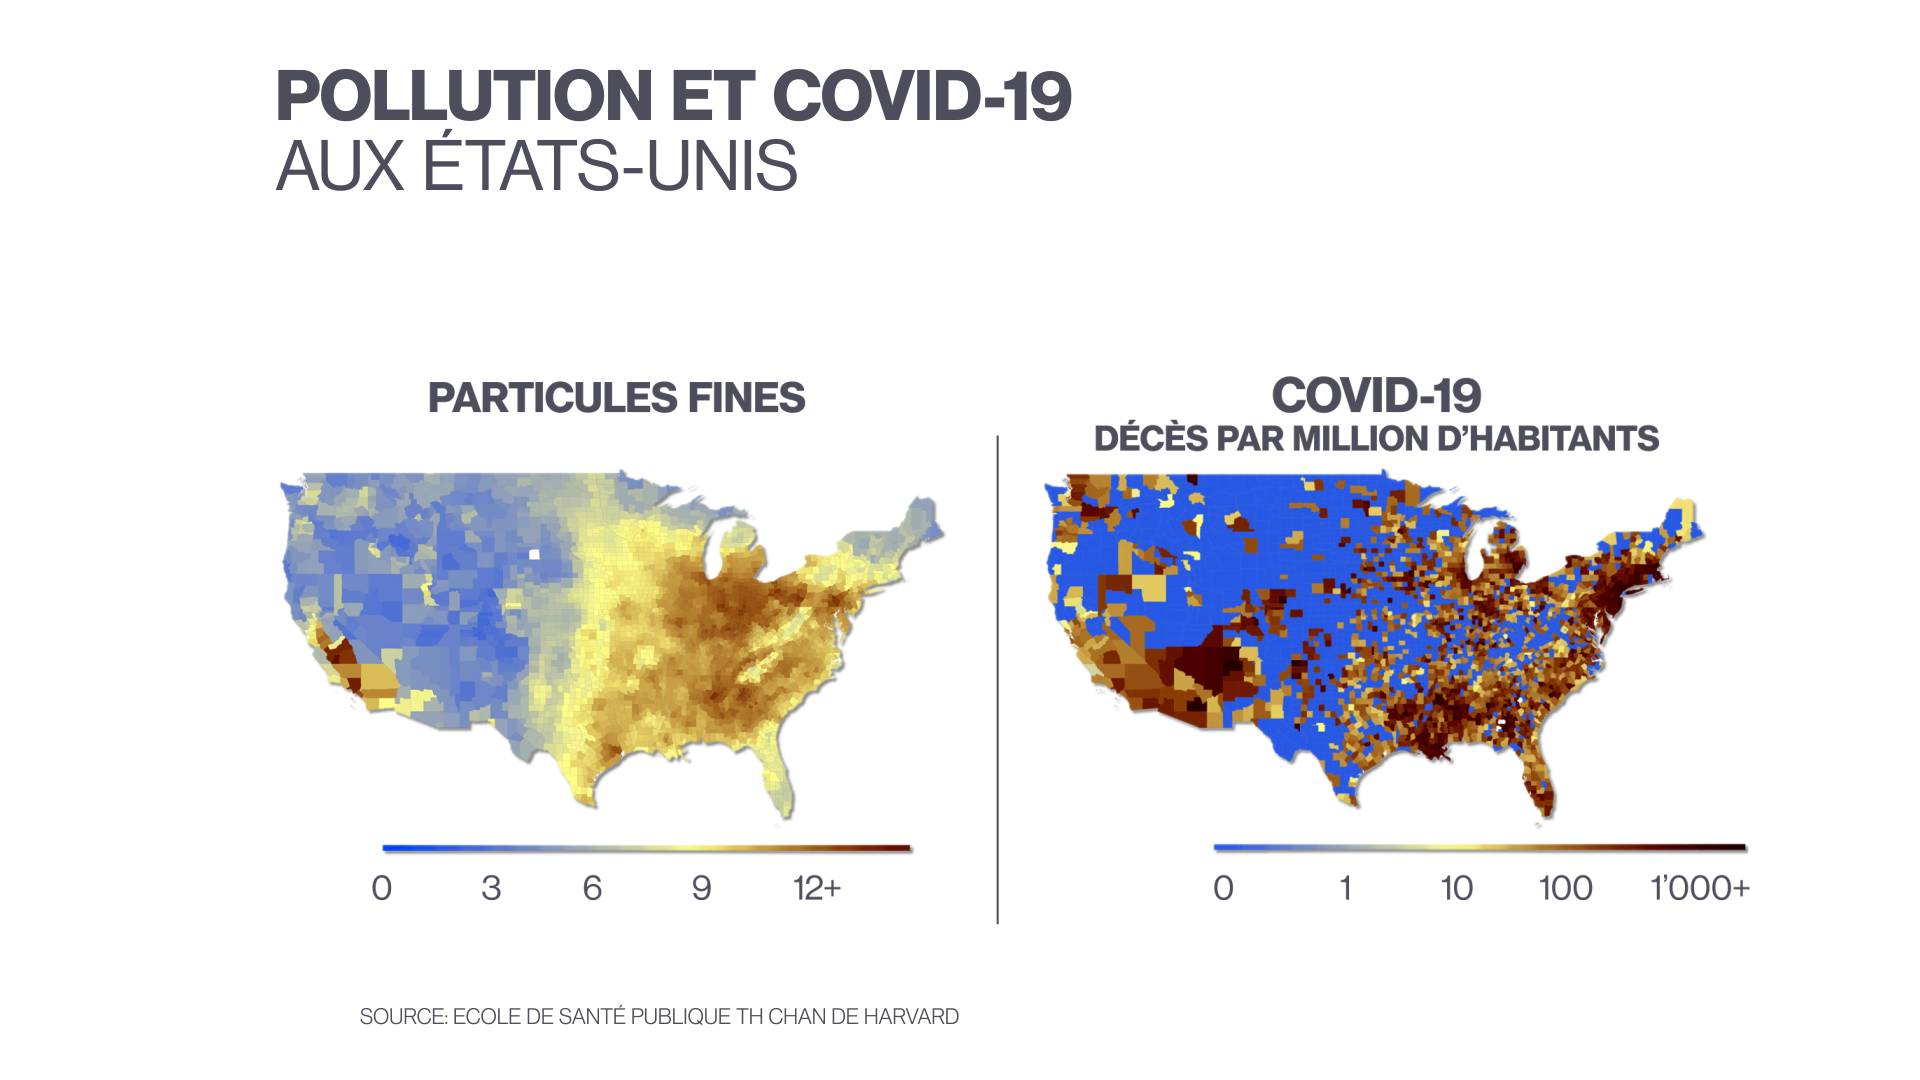 A gauche: moyenne de particules fines (PM 2,5 = 2,5 micromètres) dans les comtés américains entre 2000 et 2016. A droite: nombre de décès du COVID-19 par million d’habitants dans les comtés américains, jusqu'au 18 juin 2020 inclus. [DR - Ecole de santé publique, Harvard]